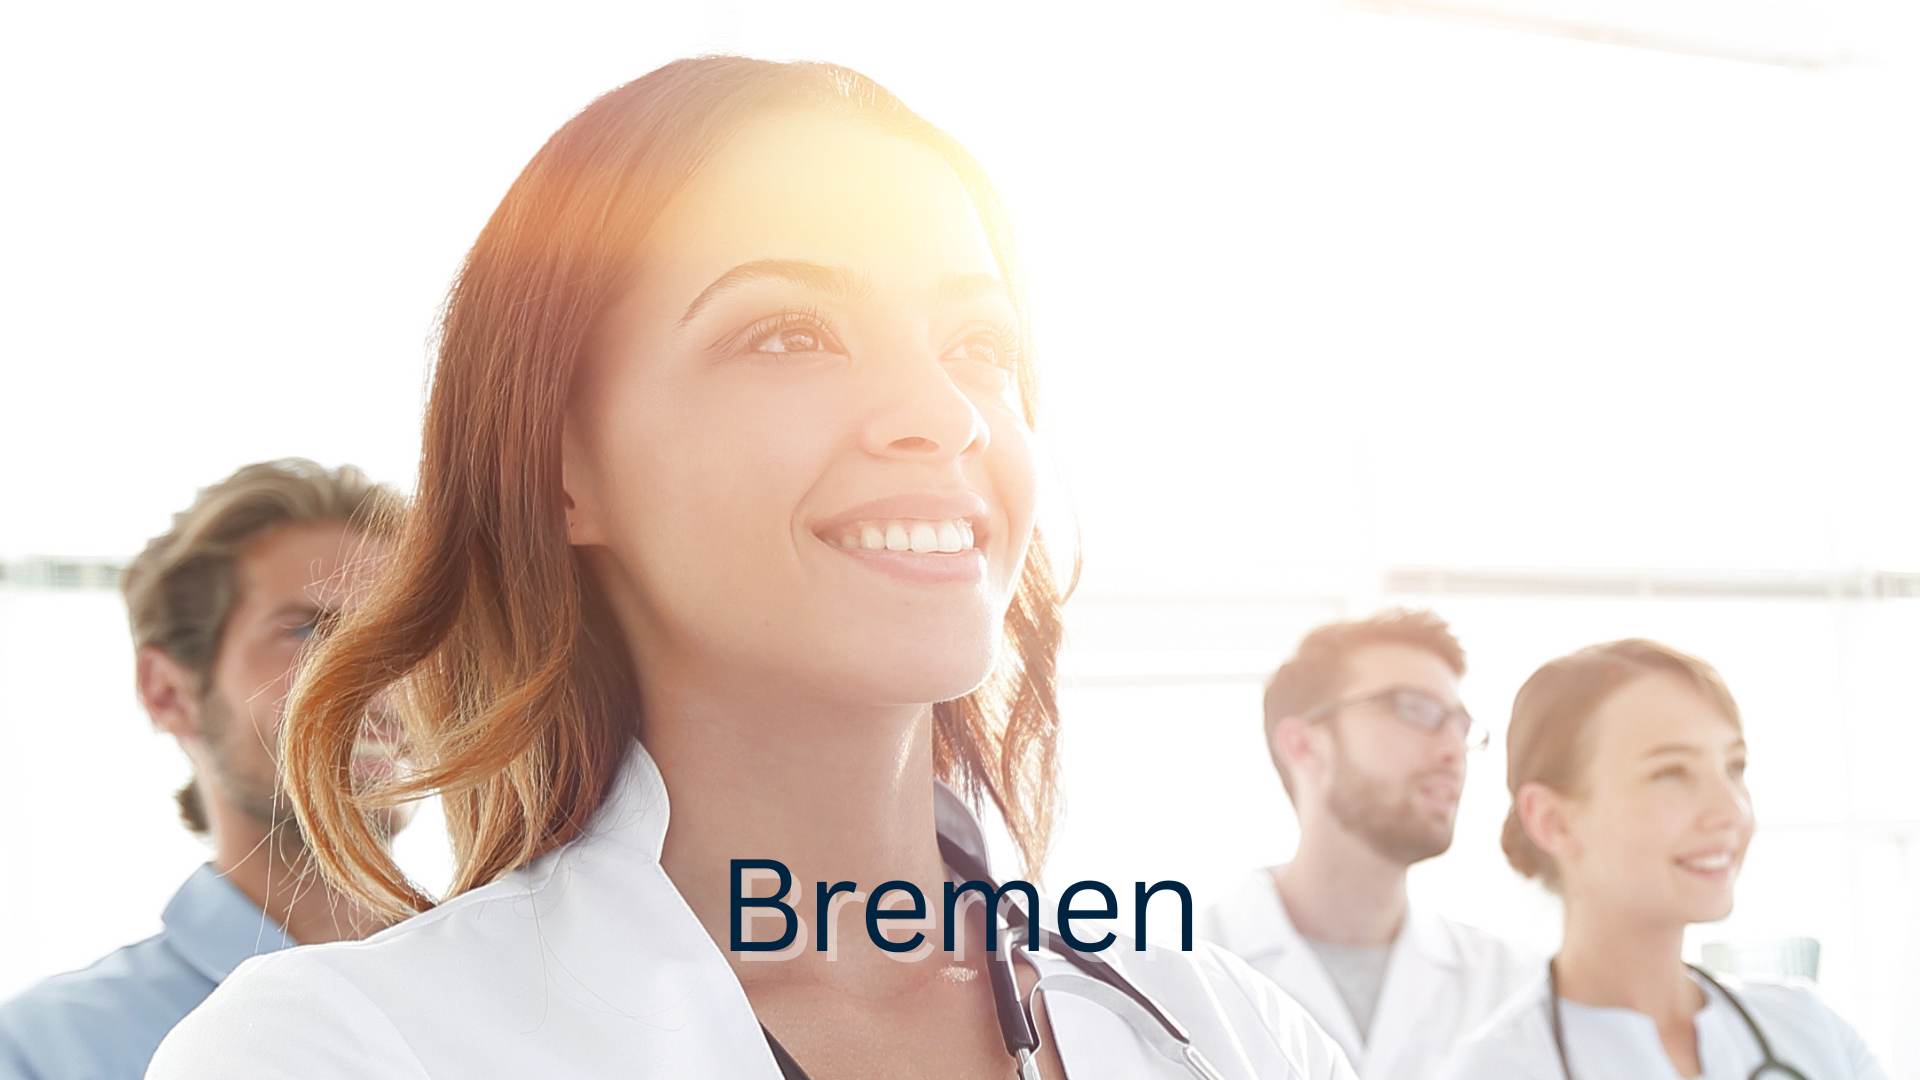 Stockbild mit vier lächelnden Medizinern und Bremen als Schriftzug 